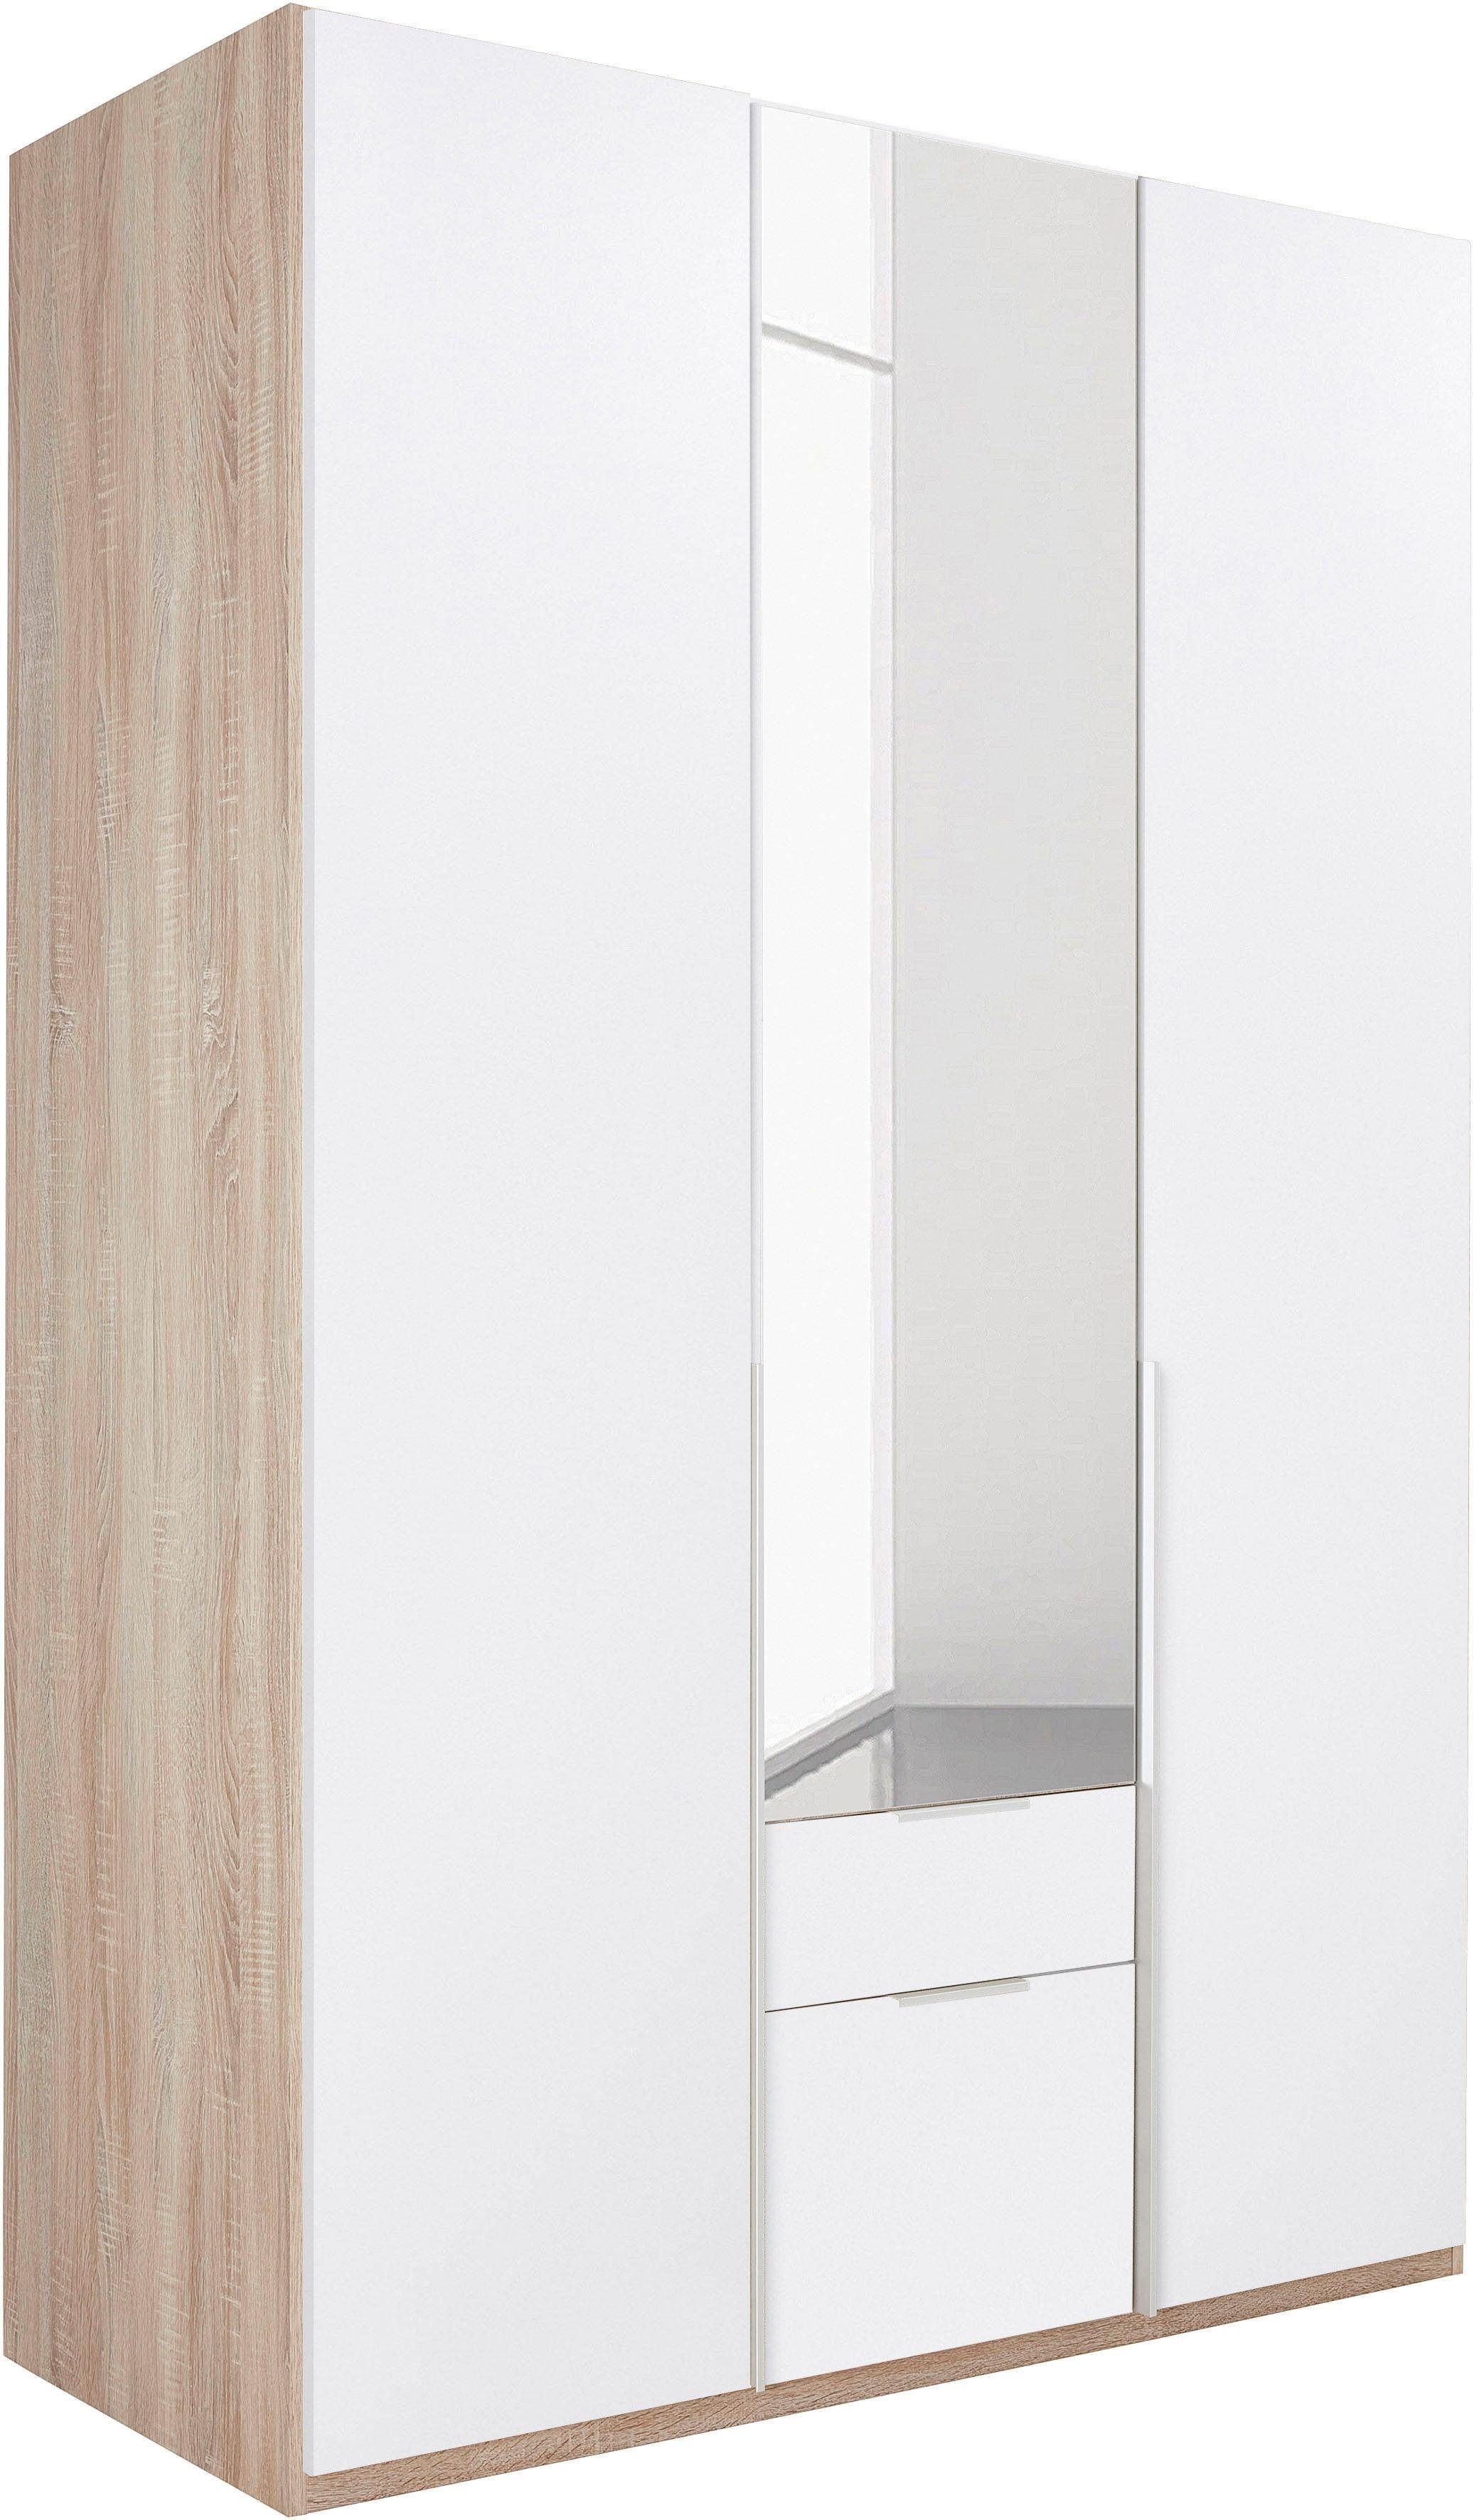 Wimex Kleiderschrank New York mit Spiegeltür struktureichefarben hell,weiß/Spiegel